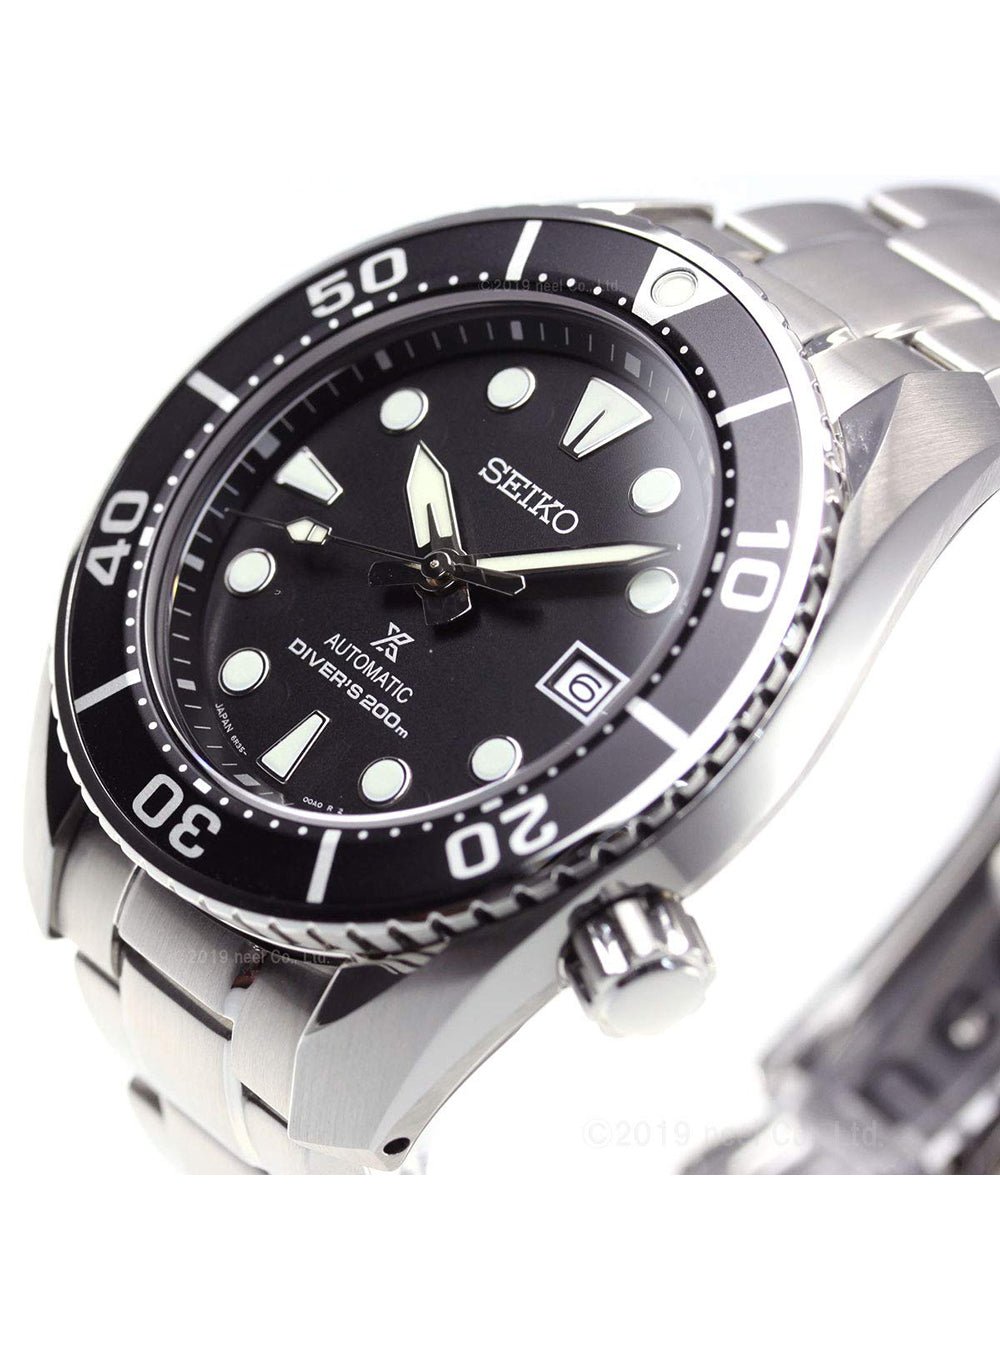 SEIKO SBDC083 プロスペックス 6R35 - 腕時計(アナログ)